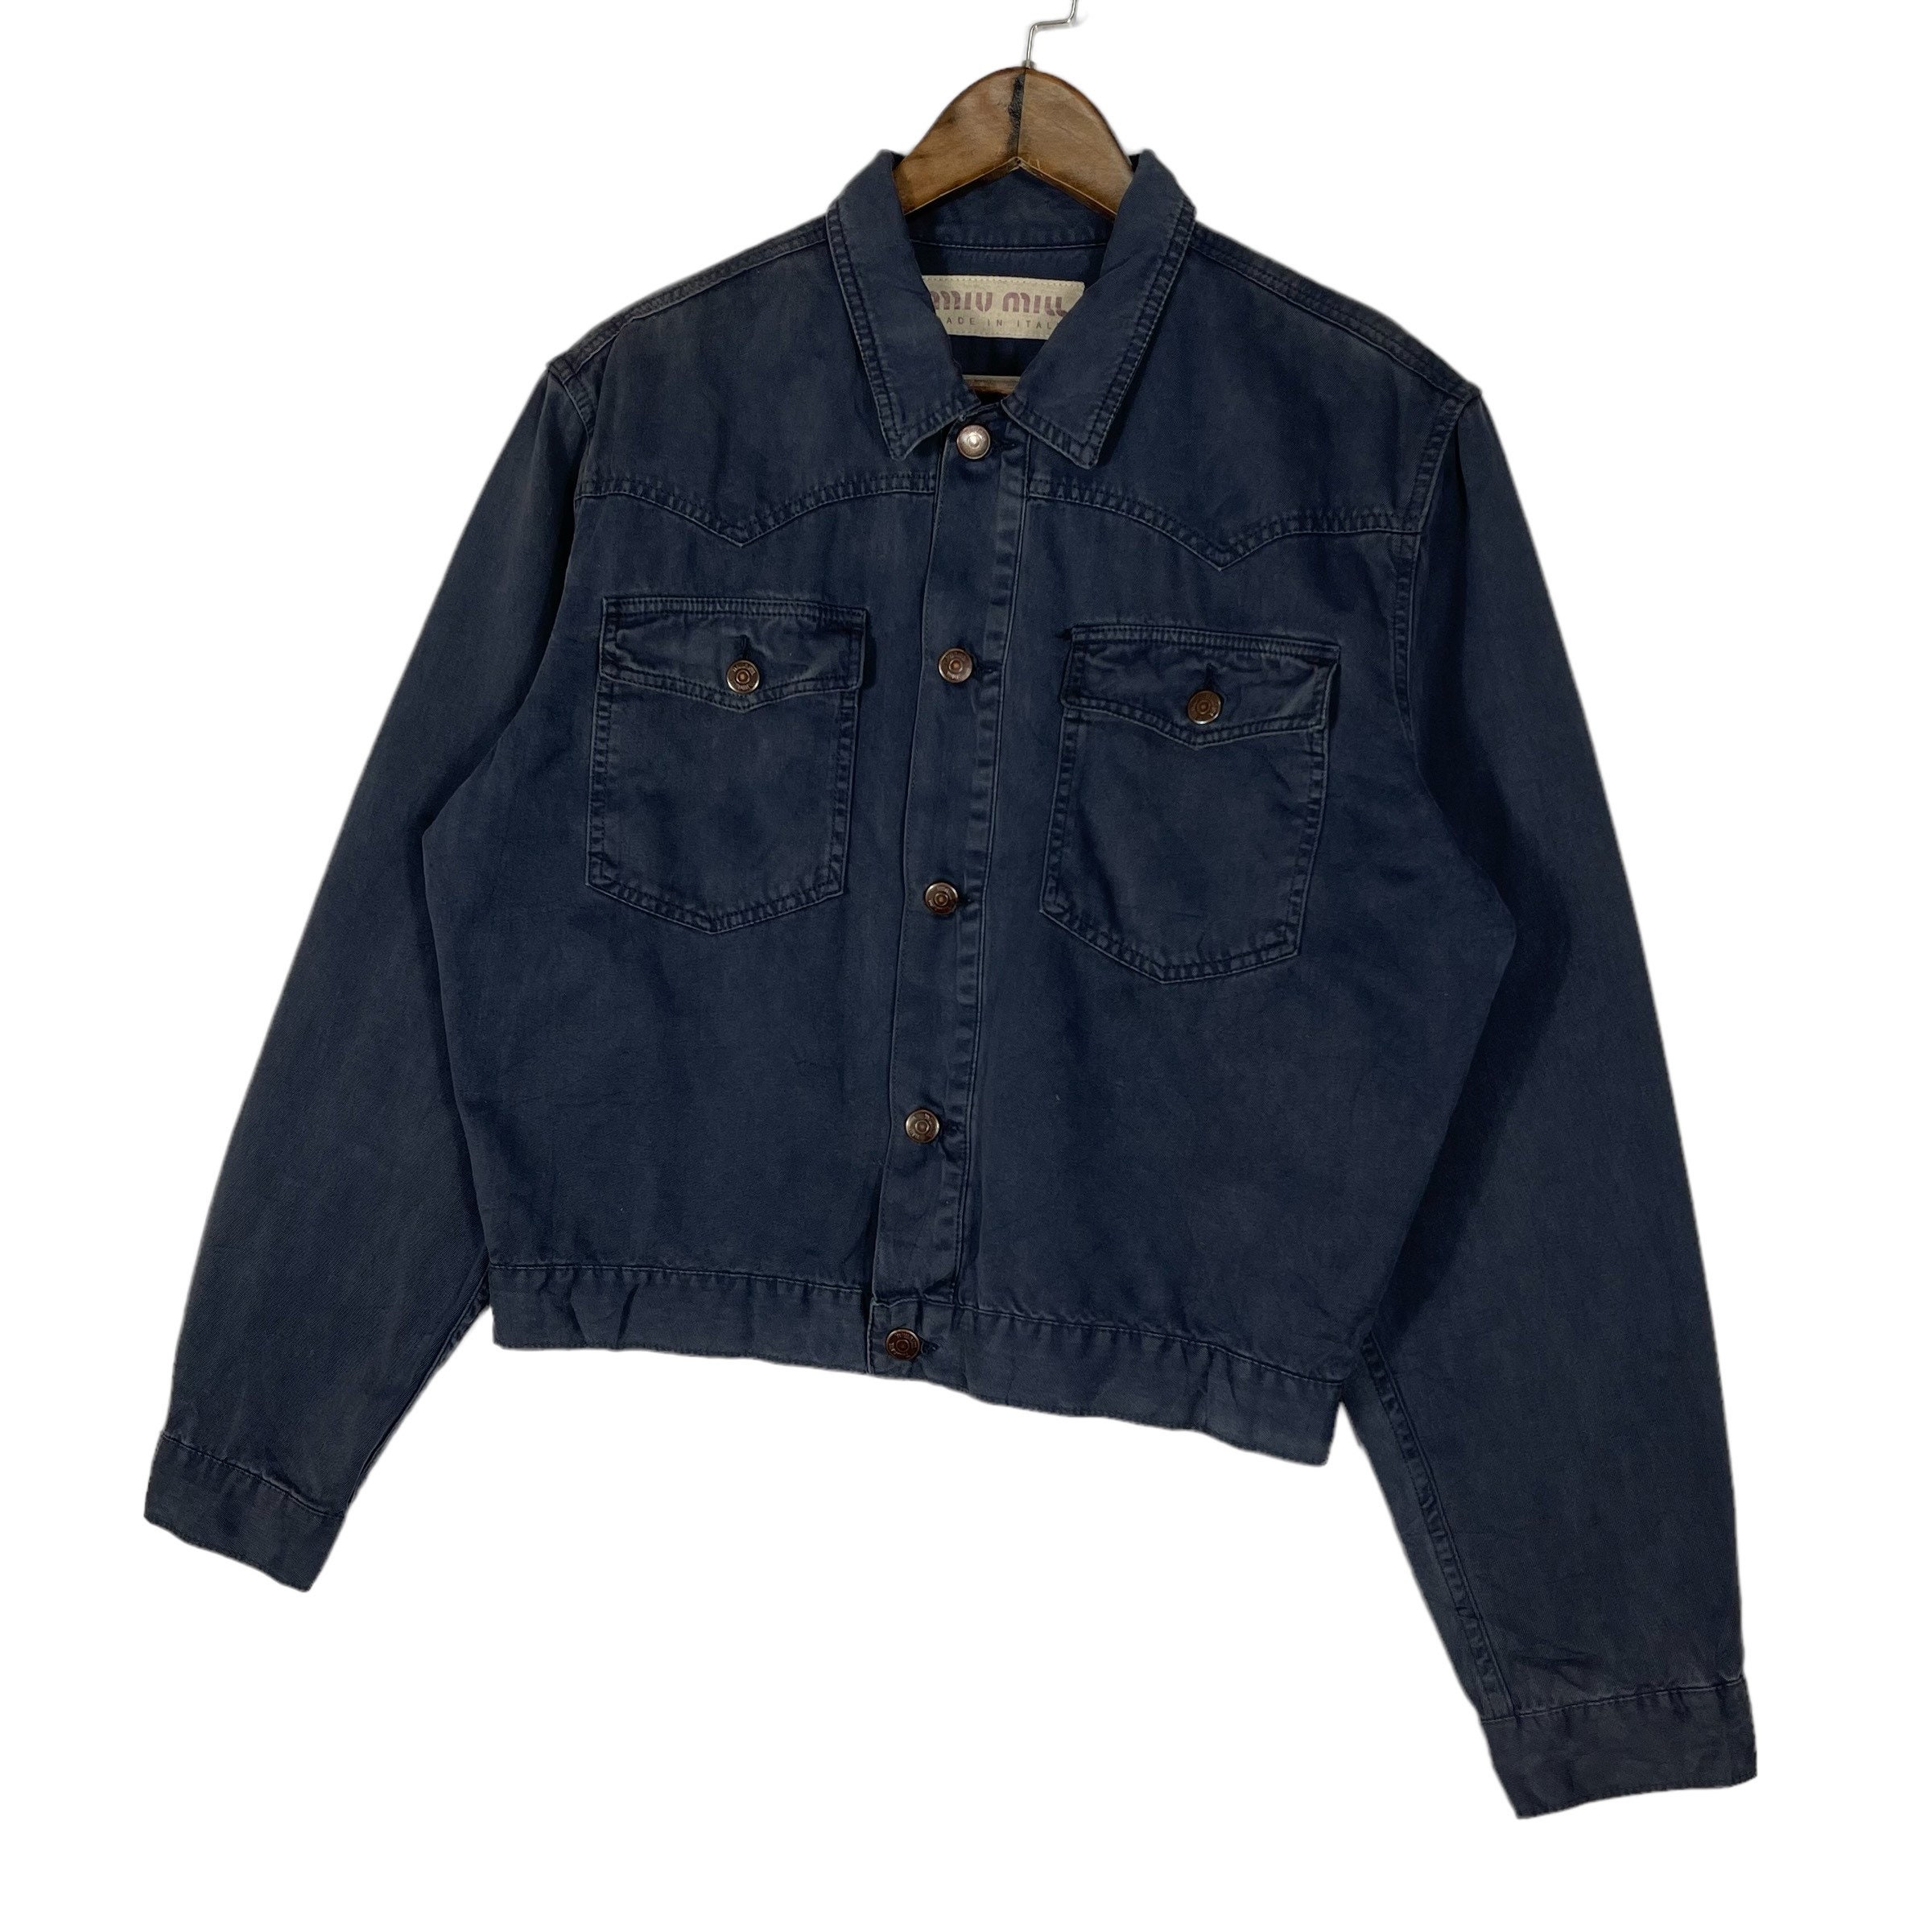 Buy Vintage MIU MIU Cotton Trucker Jacket Blue Crop Jacket Made in